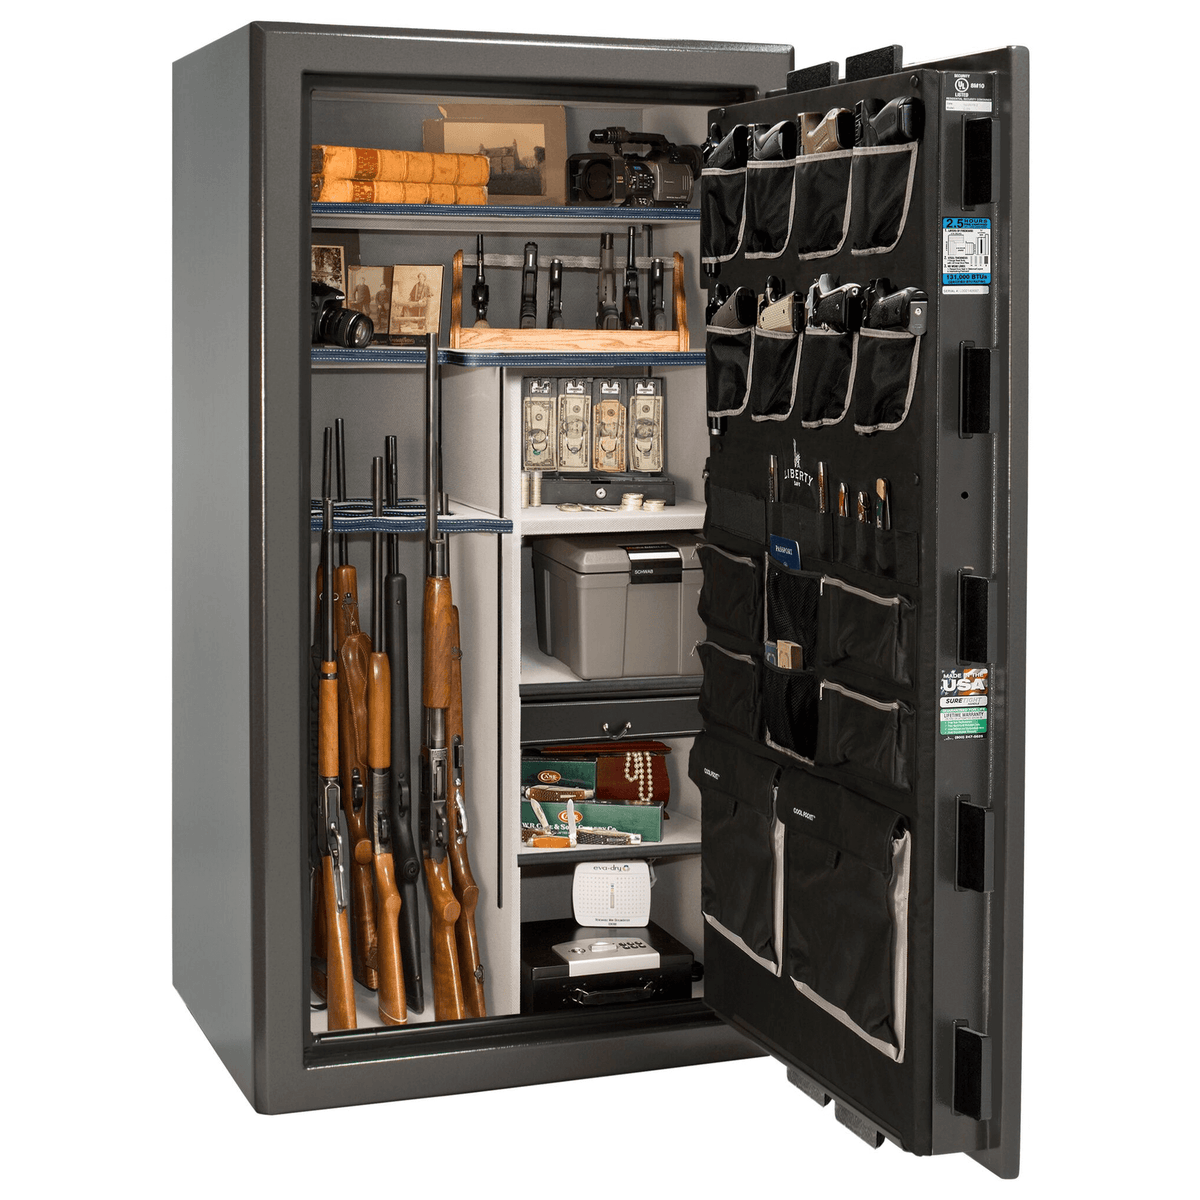 Gun Storage Solutions Original Handgun Hangers, 10 in. x 2-1/2 in